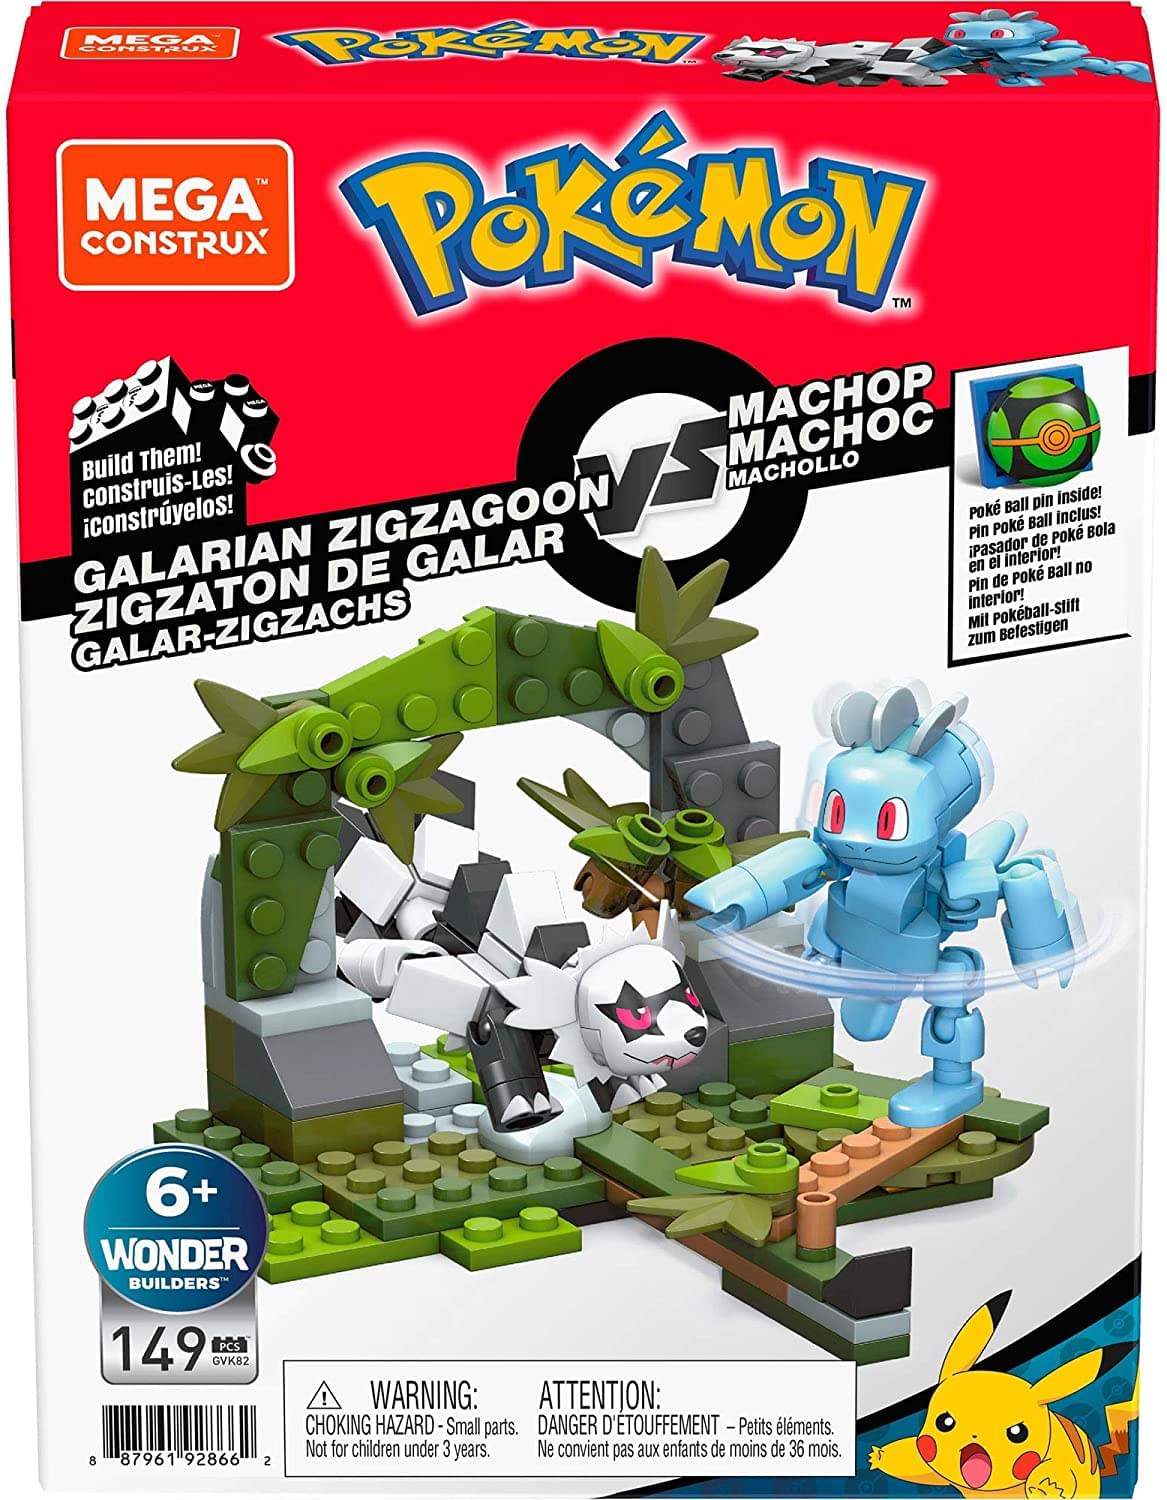 Pokemon Mega Construx 149 Piece Building Set | Galarian Zigzagoon vs Machop